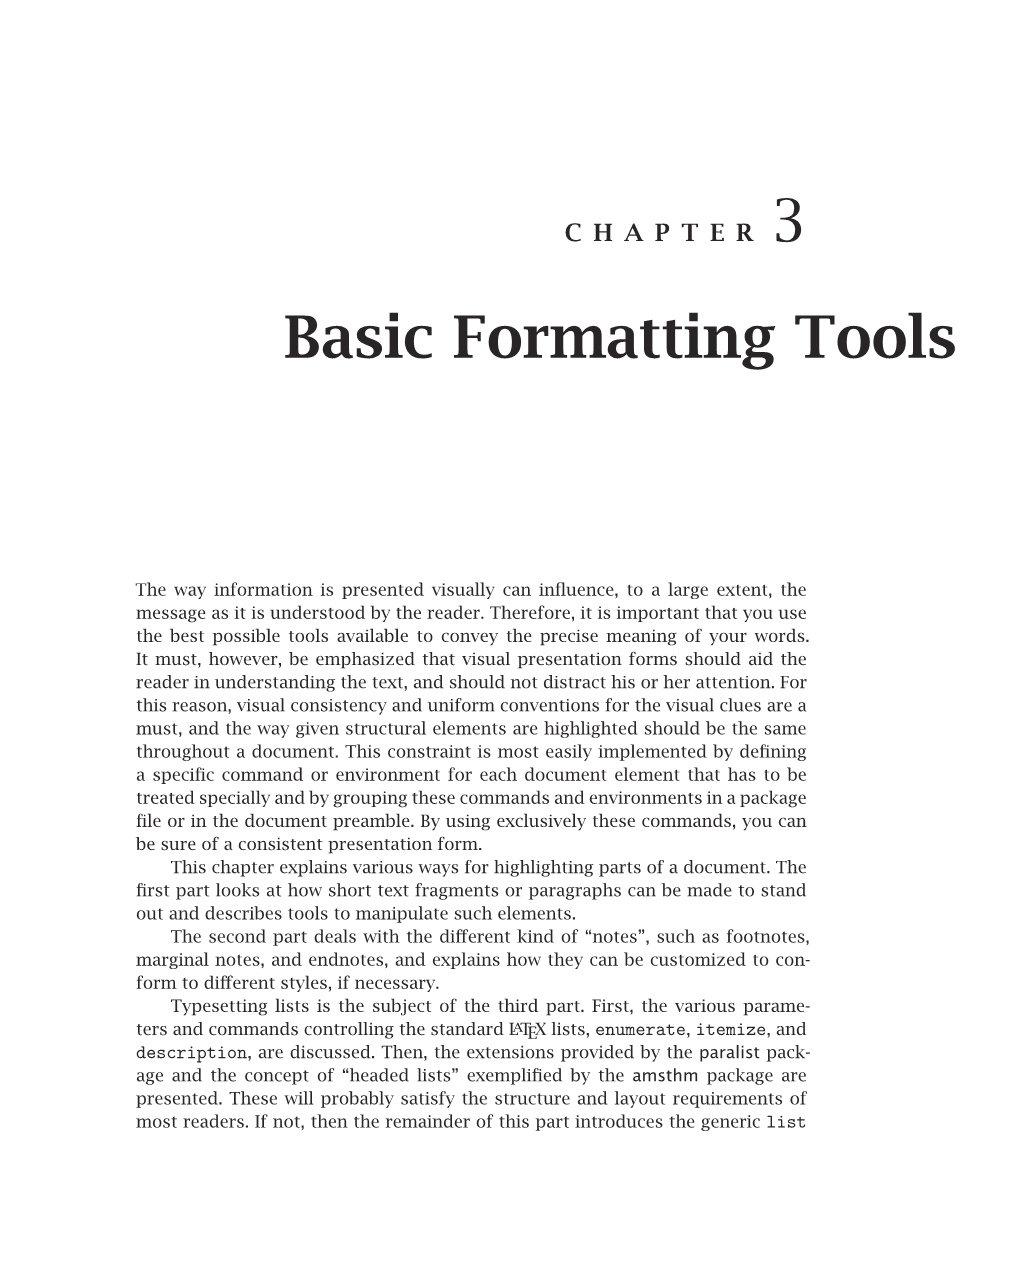 Basic Formatting Tools